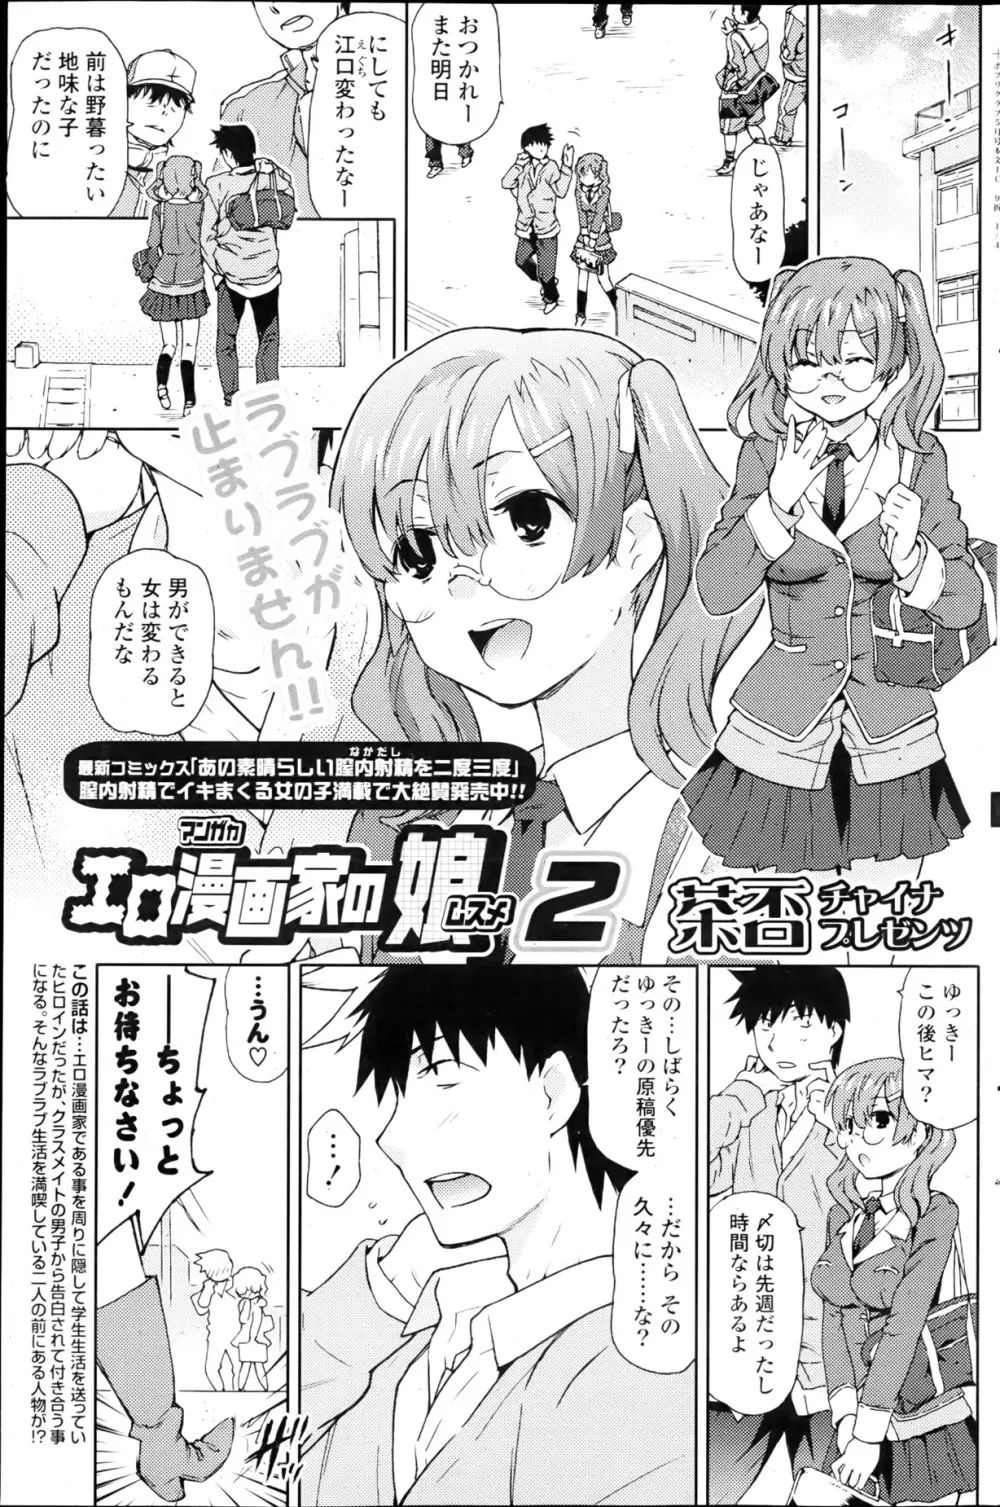 Ero Mangaka no Musume Ch.1-2 Page.17